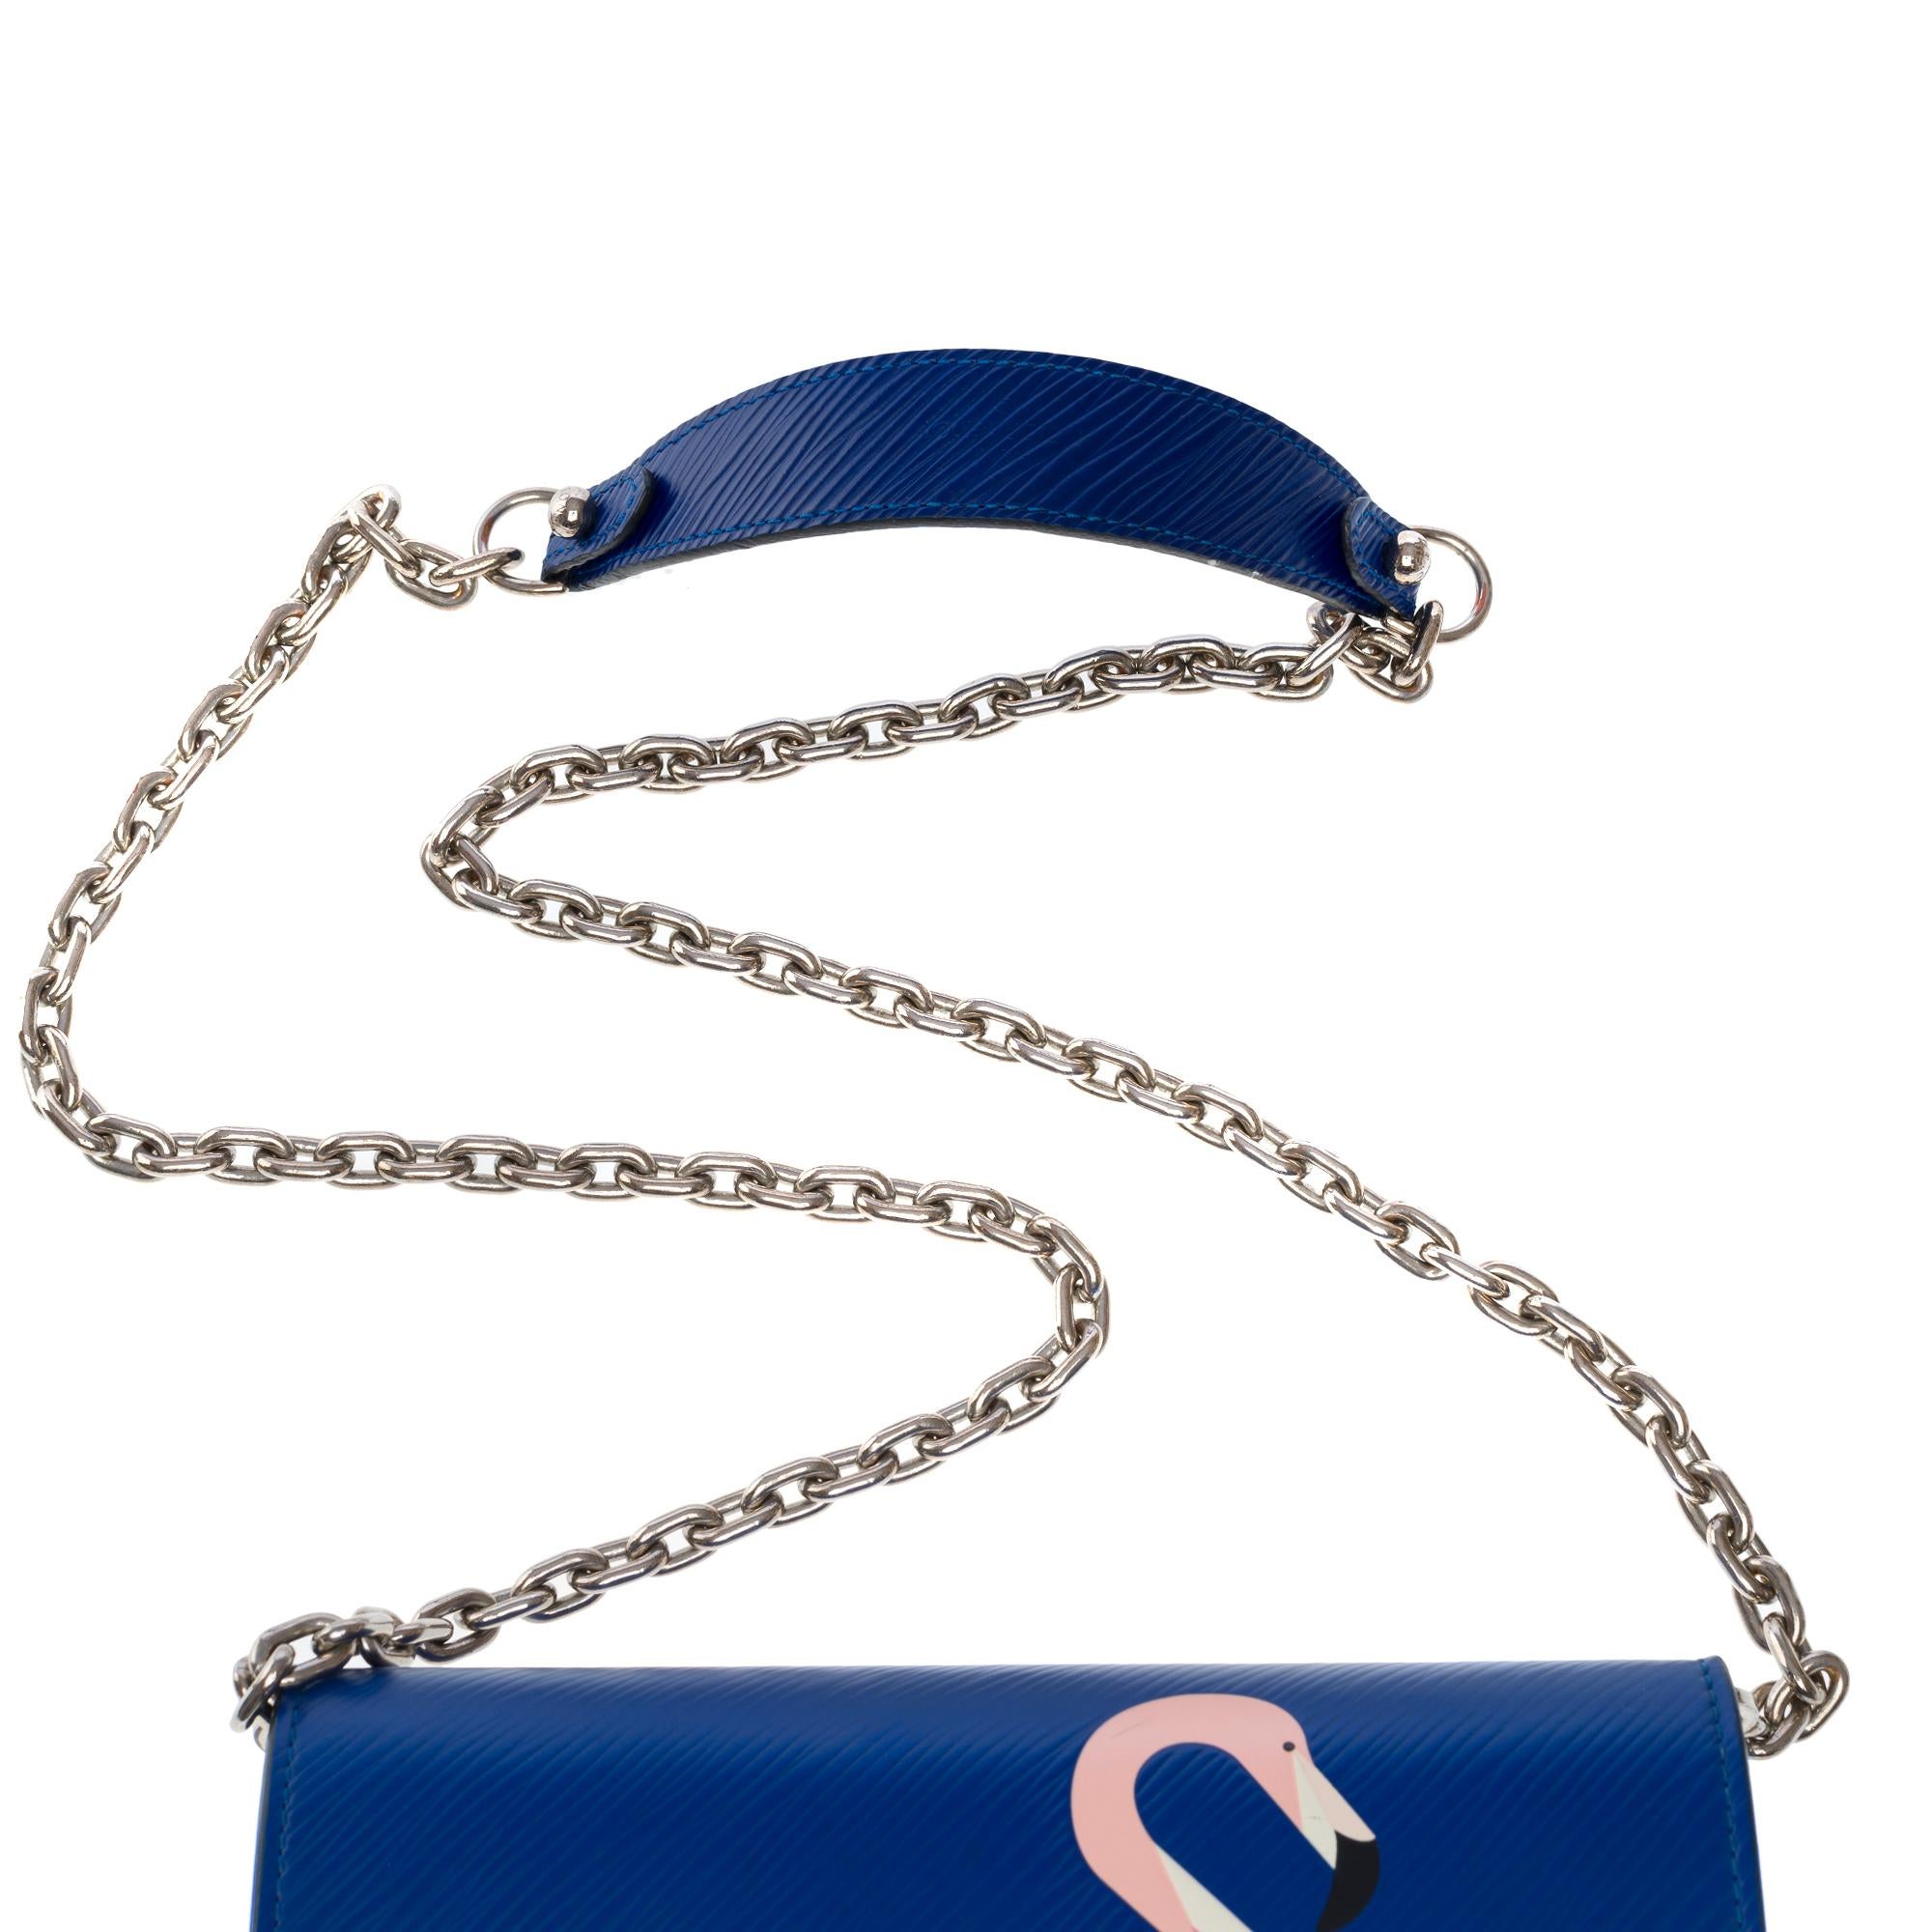 Flamingo Louis Vuitton Twist shoulder bag in blue epi leather, SHW 5